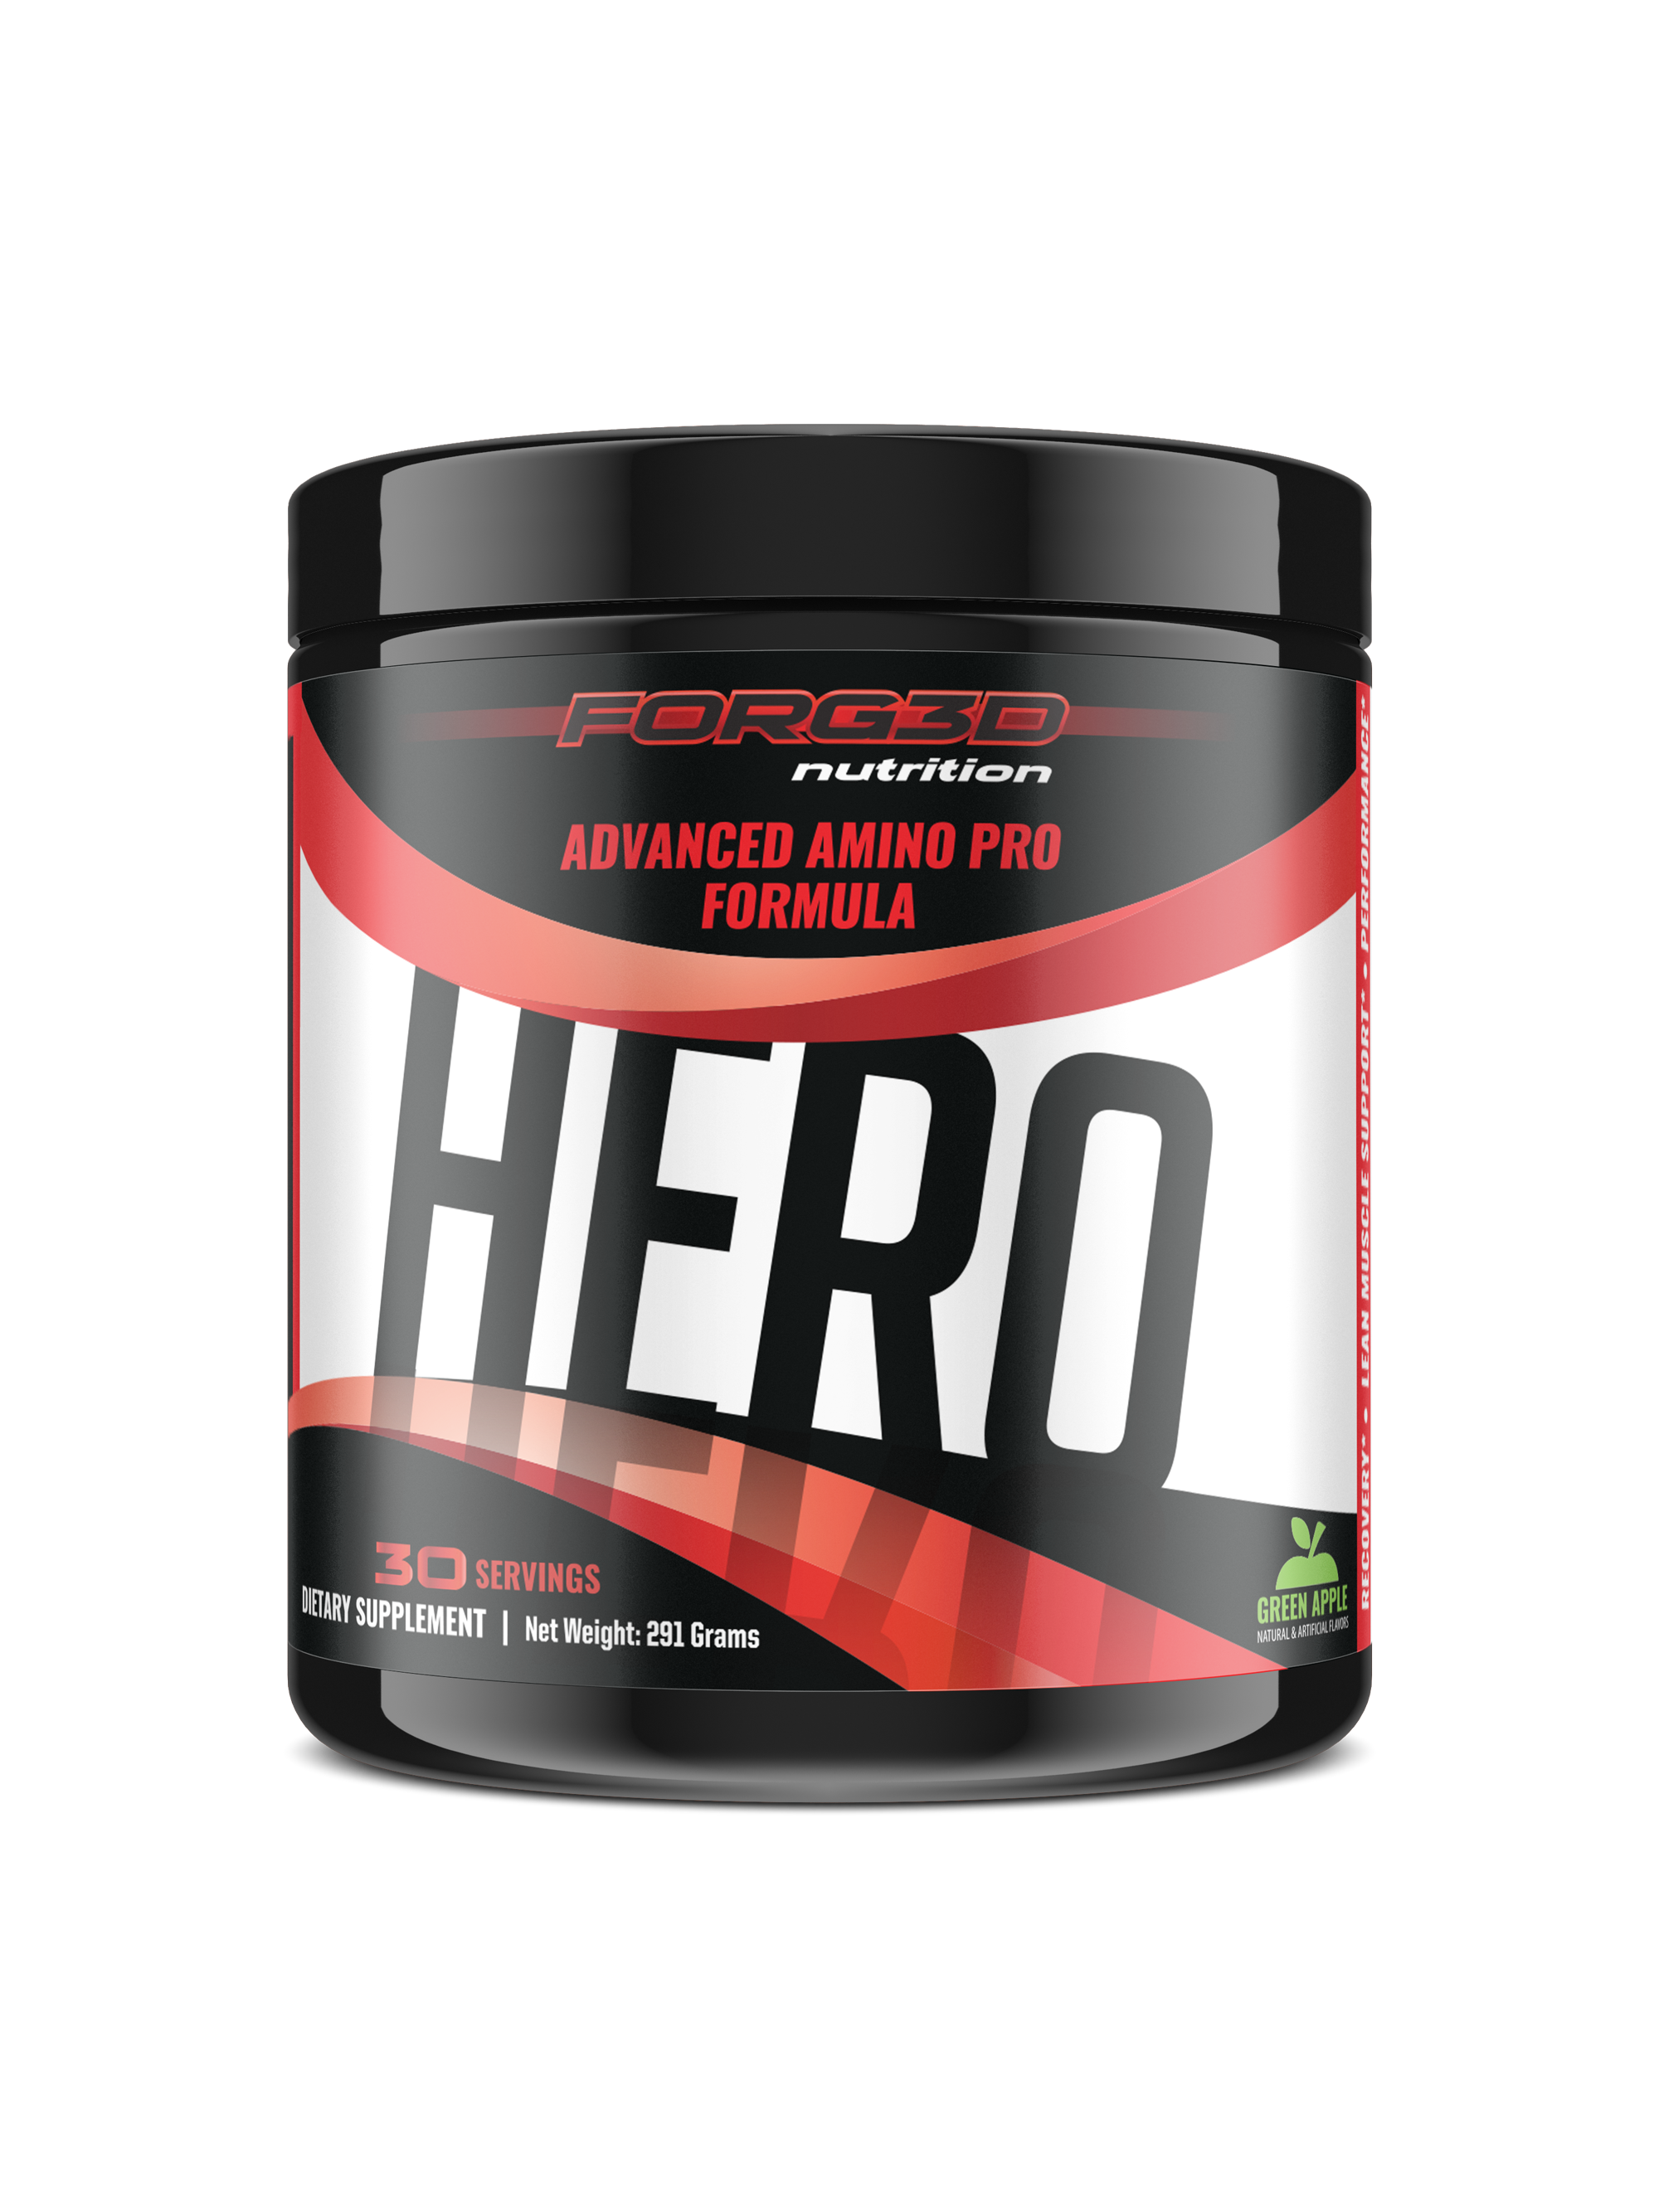 HERO - Advanced Amino Pro Formula